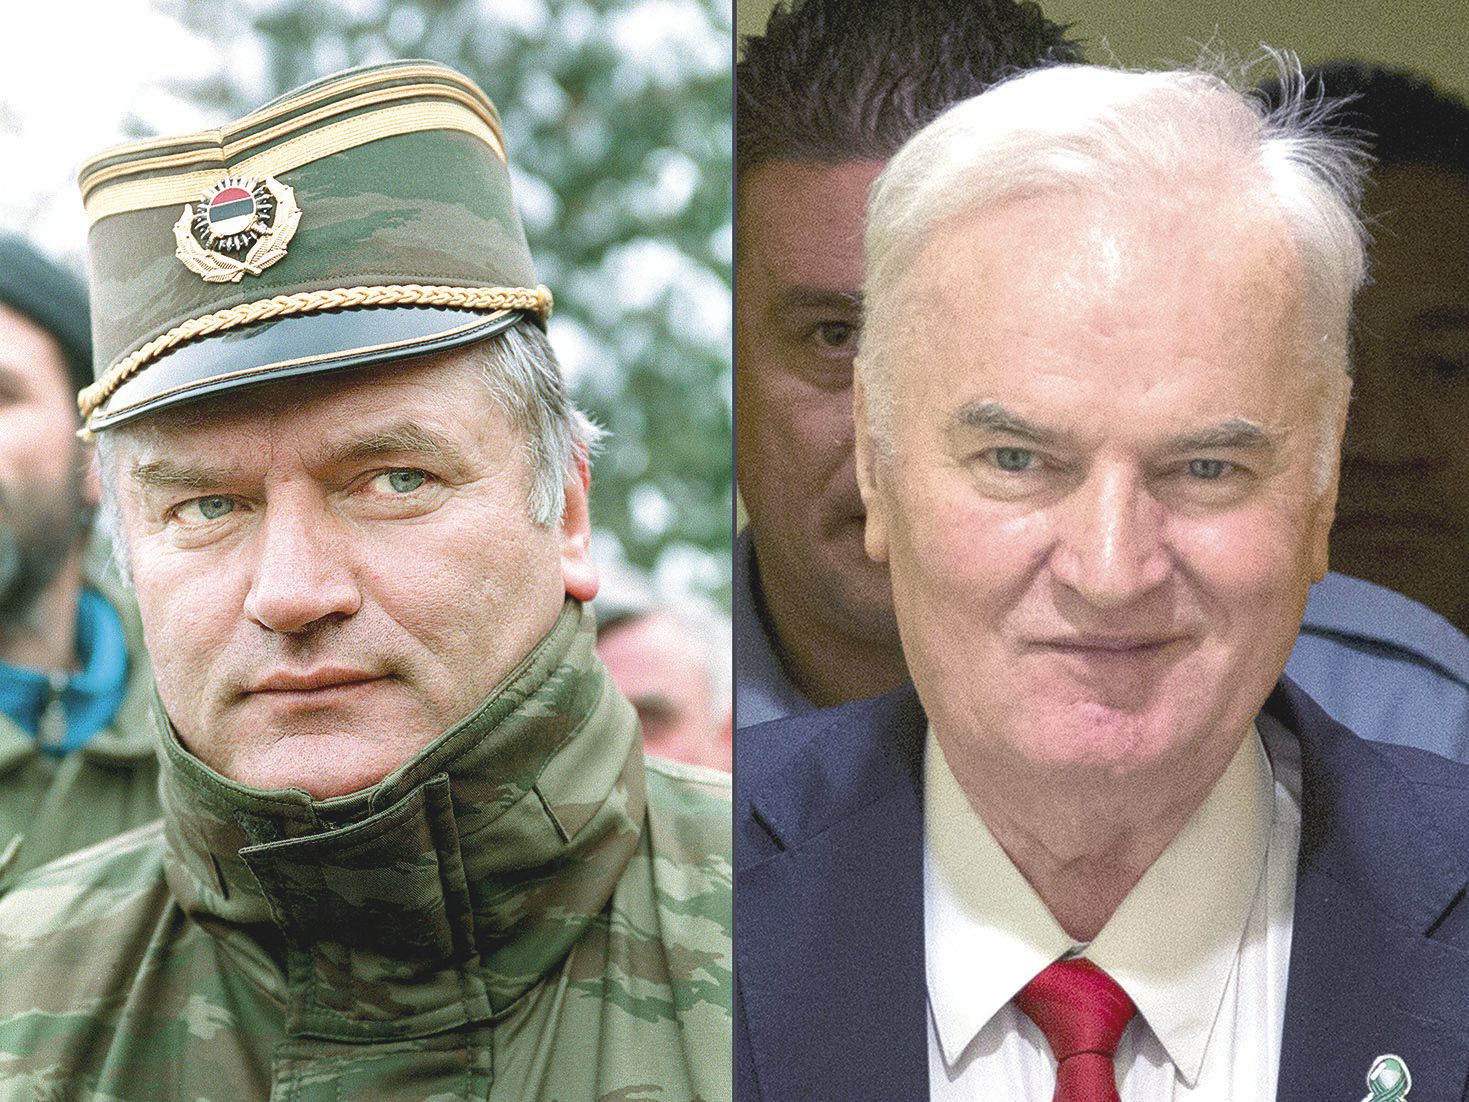 Ratko Mladic, pendant le conflit et aujourd’hui. Selonson fils Darko, il va faire faire appel de ce jugement.